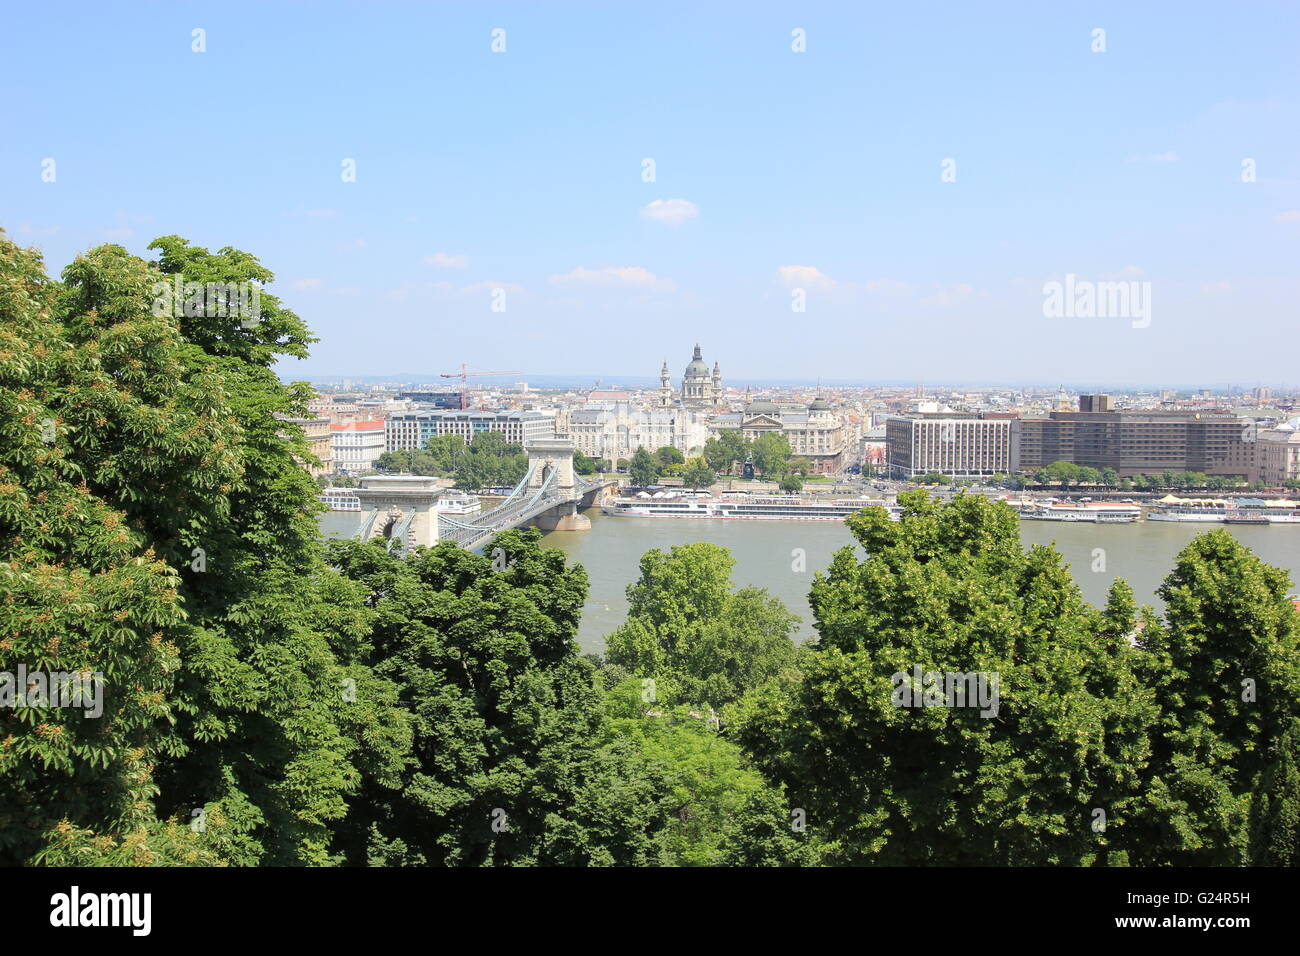 Ein Blick auf die Kettenbrücke, Castle Hill, Donau, Budapest, Ungarn Stockfoto